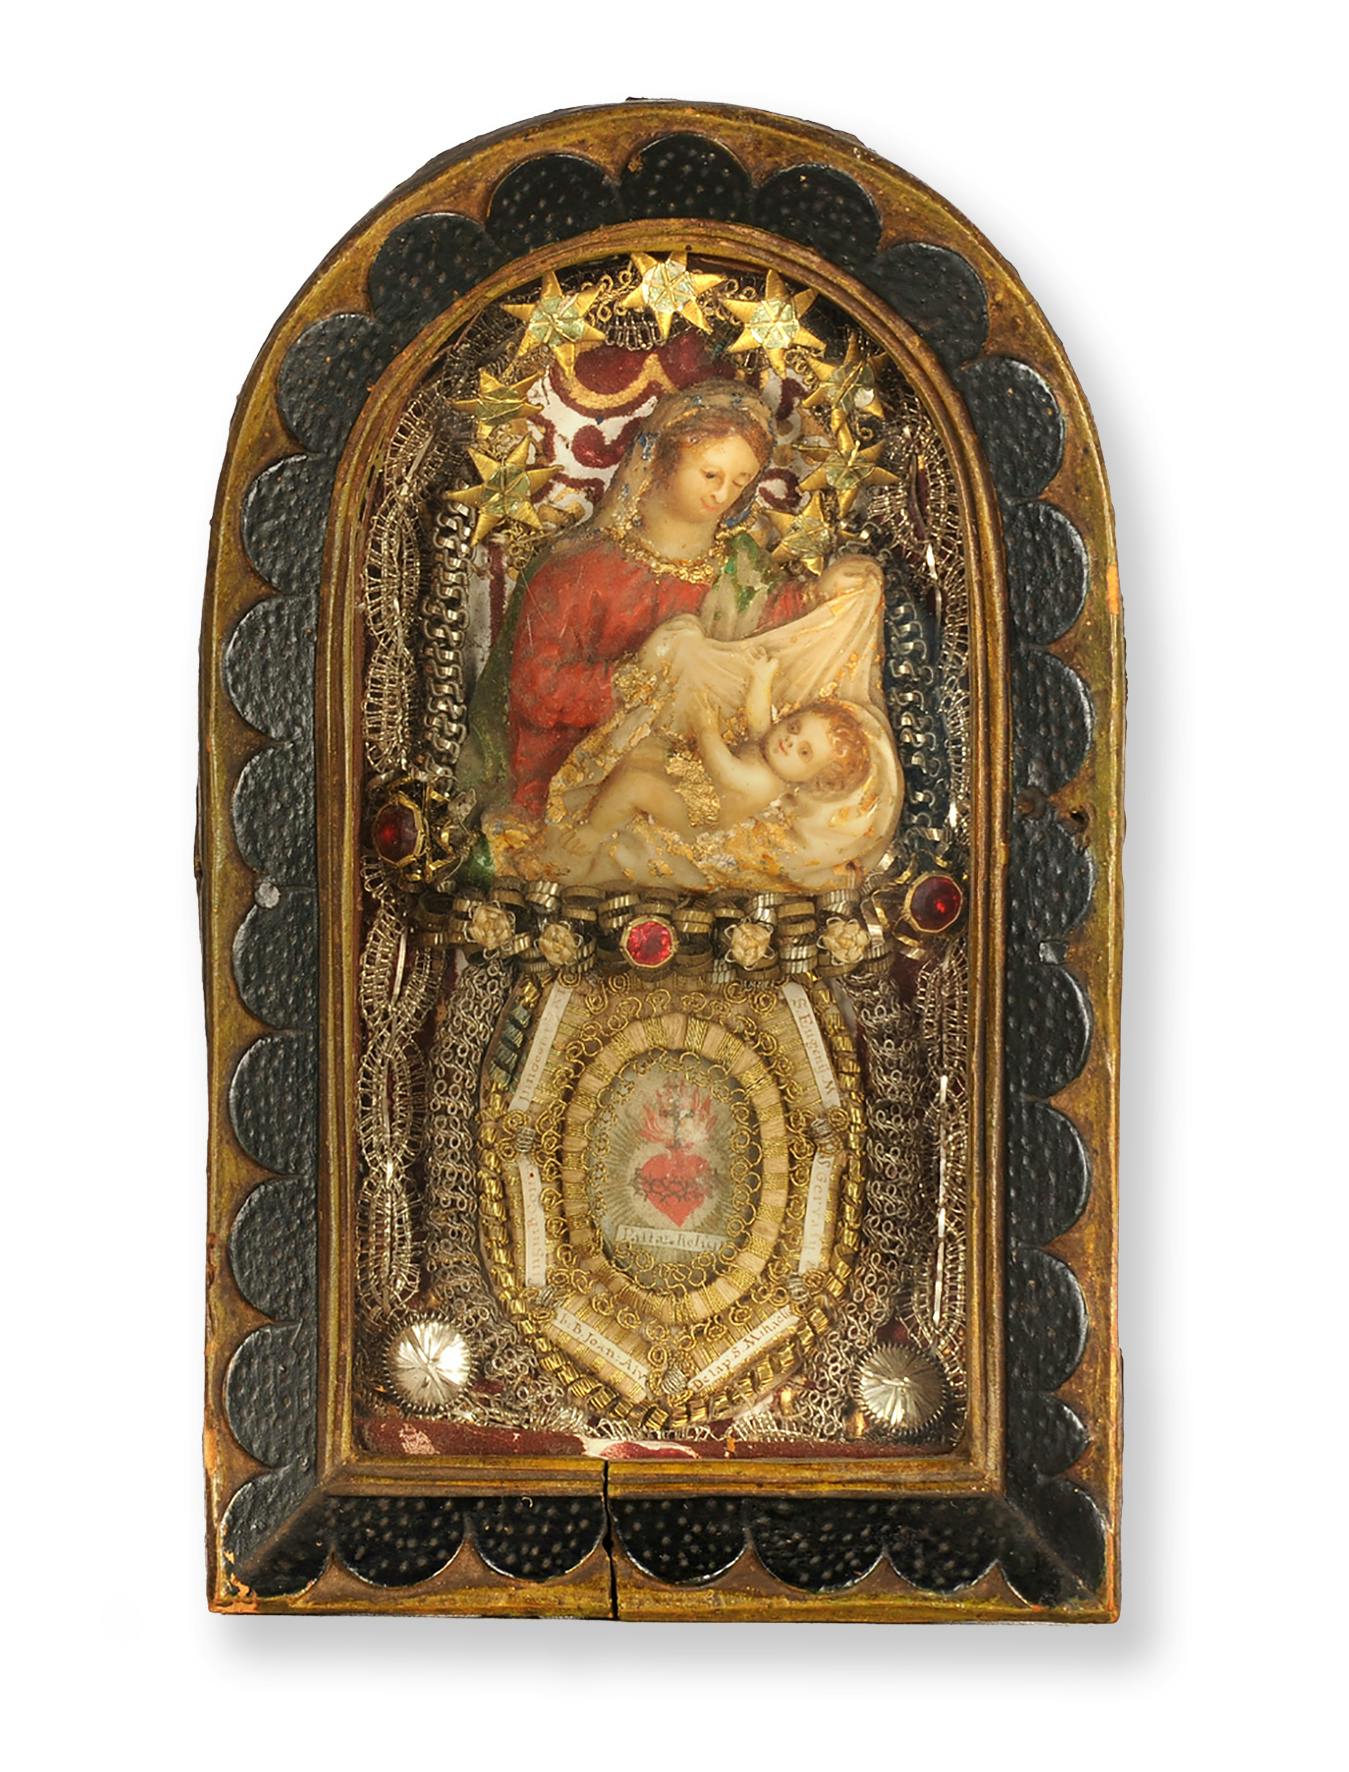 Maria mit Kind, Klosterarbeit mit Reliquien, 19.5 x 11.8 x 4.3 cm, Herkunft unbekannt, wohl frühes 19. Jh.